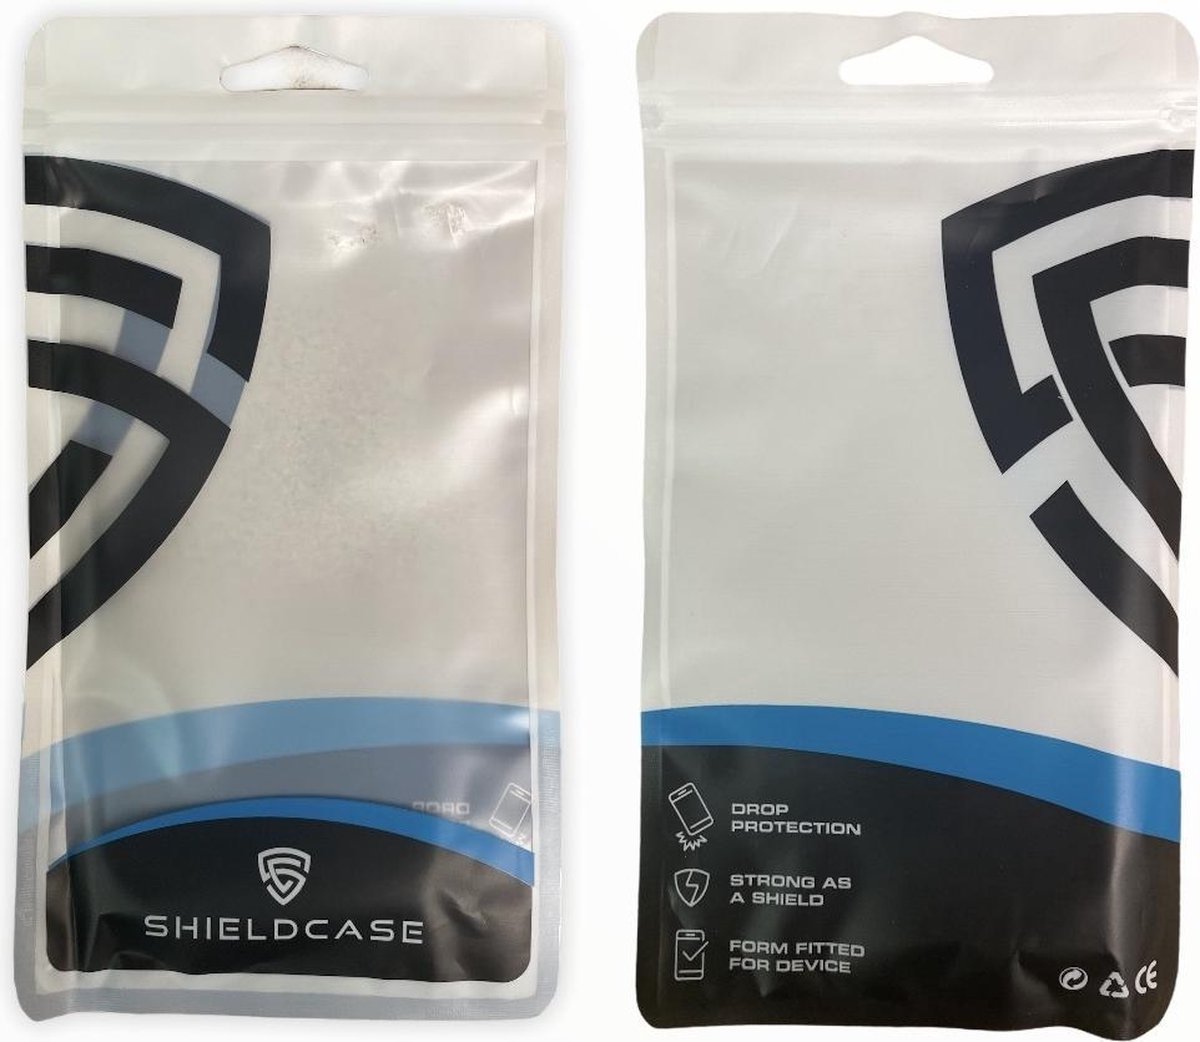 ShieldCase dubbellaags siliconen hoesje geschikt voor Apple iPhone X / Xs - geel-zwart - Beschermhoesje - Shock proof Hardcase - Siliconen - TPU Case shockproof - Beschermhoes